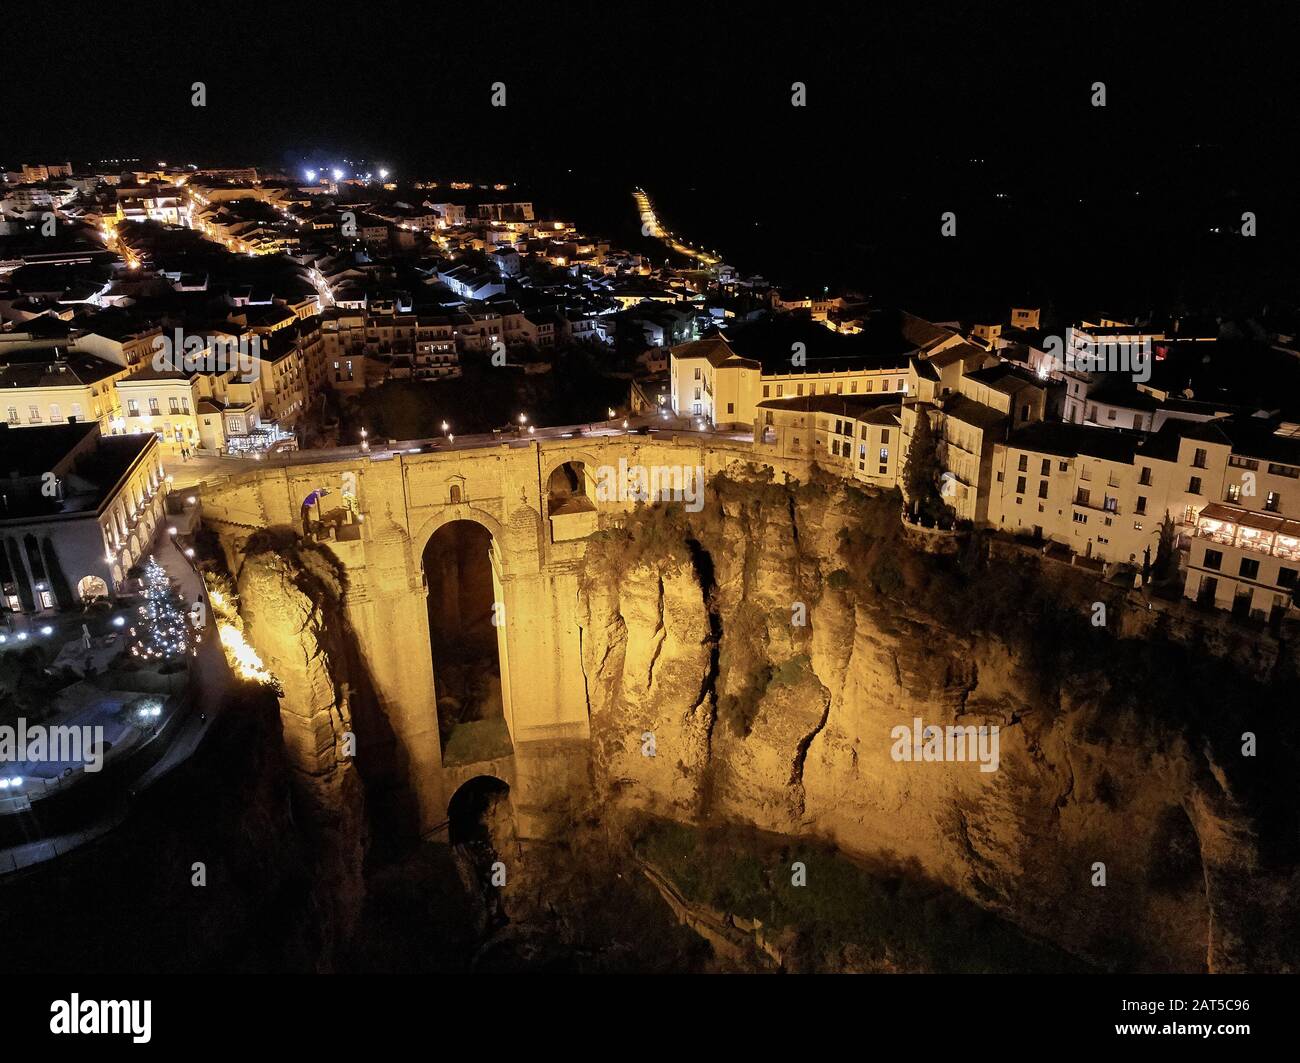 Photo aérienne drone point de vue énorme gorge et architecture ancienne, ville lumière la nuit vue de Ronda dans la province espagnole de Málaga. Espagne Banque D'Images